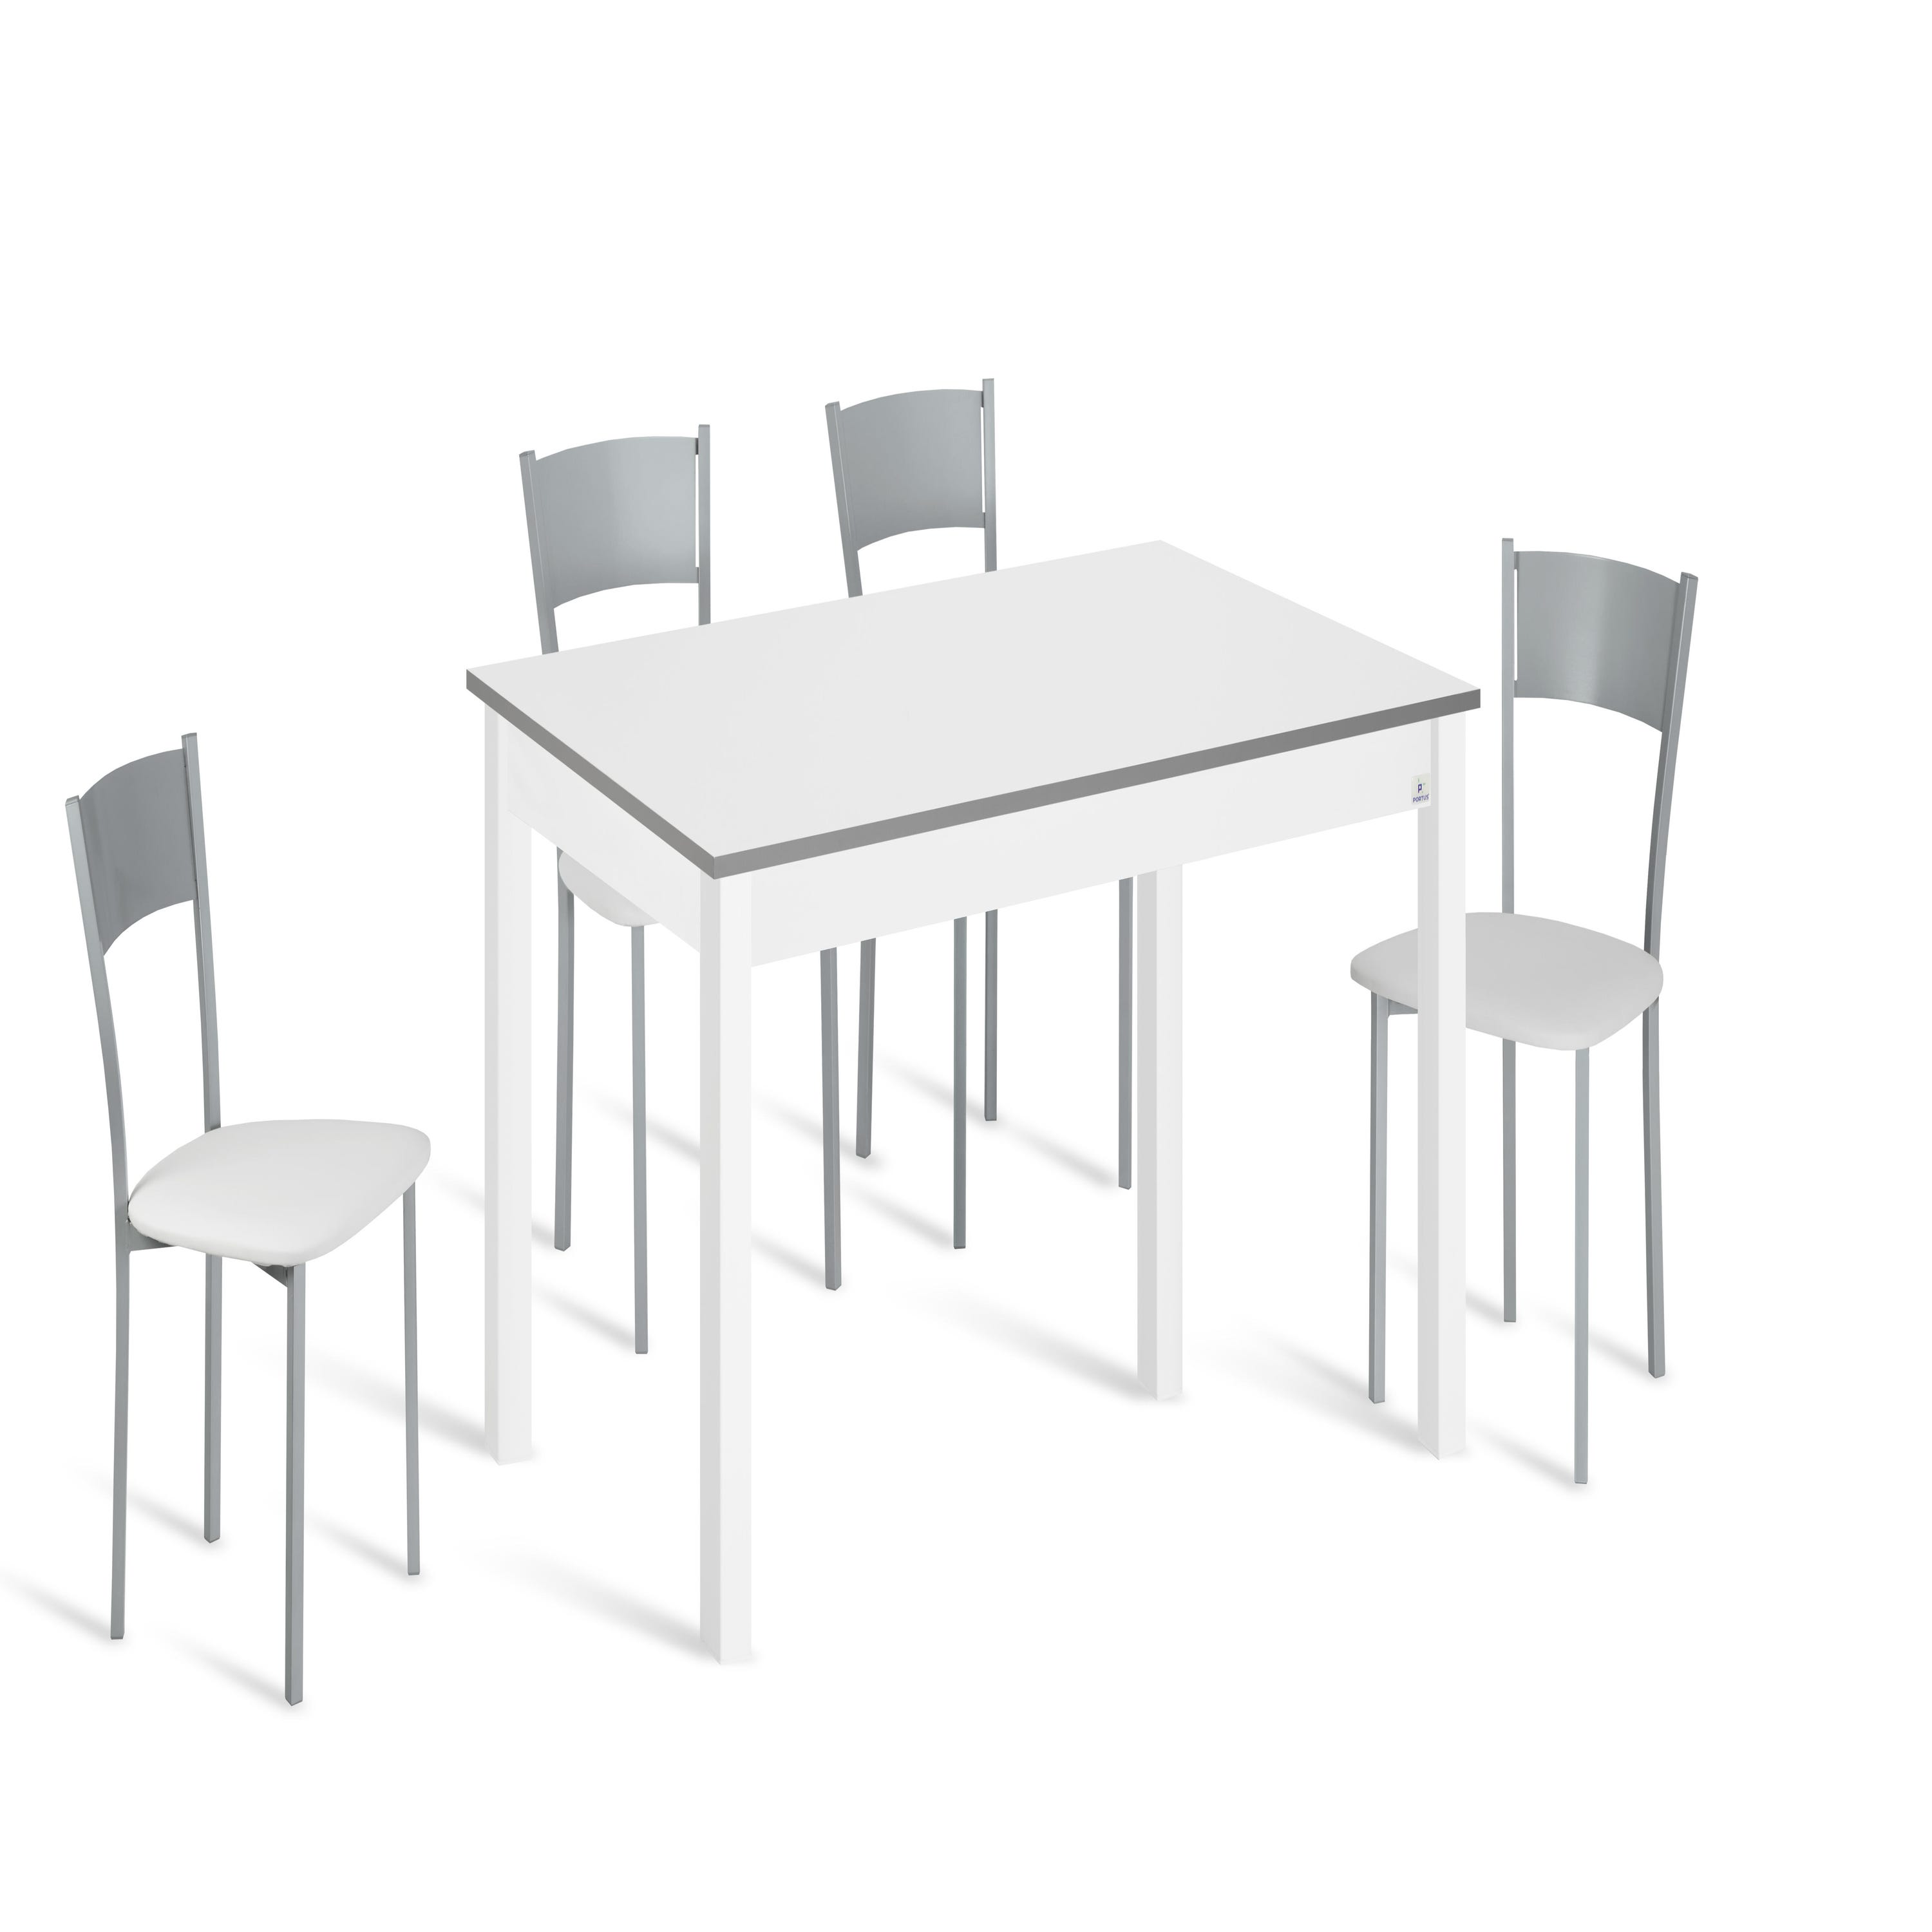 Conjunto mesa Meri 100x60 cm extensible con 4 asientos